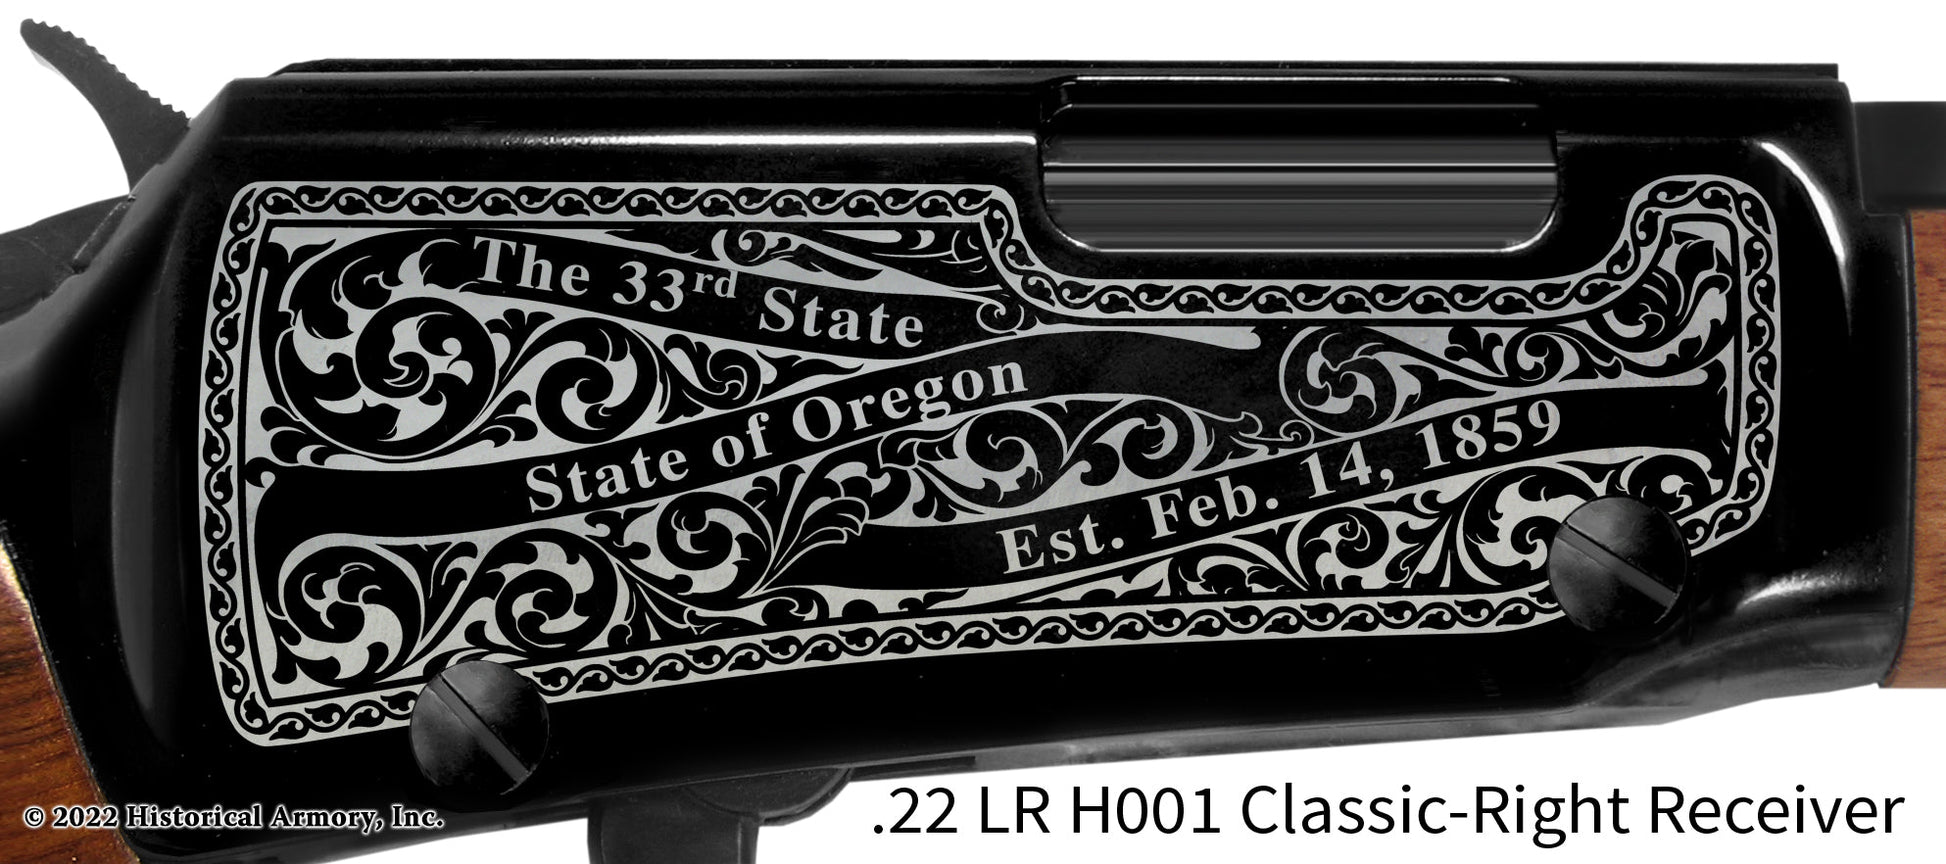 Klamath County Oregon Engraved Henry H001 Rifle